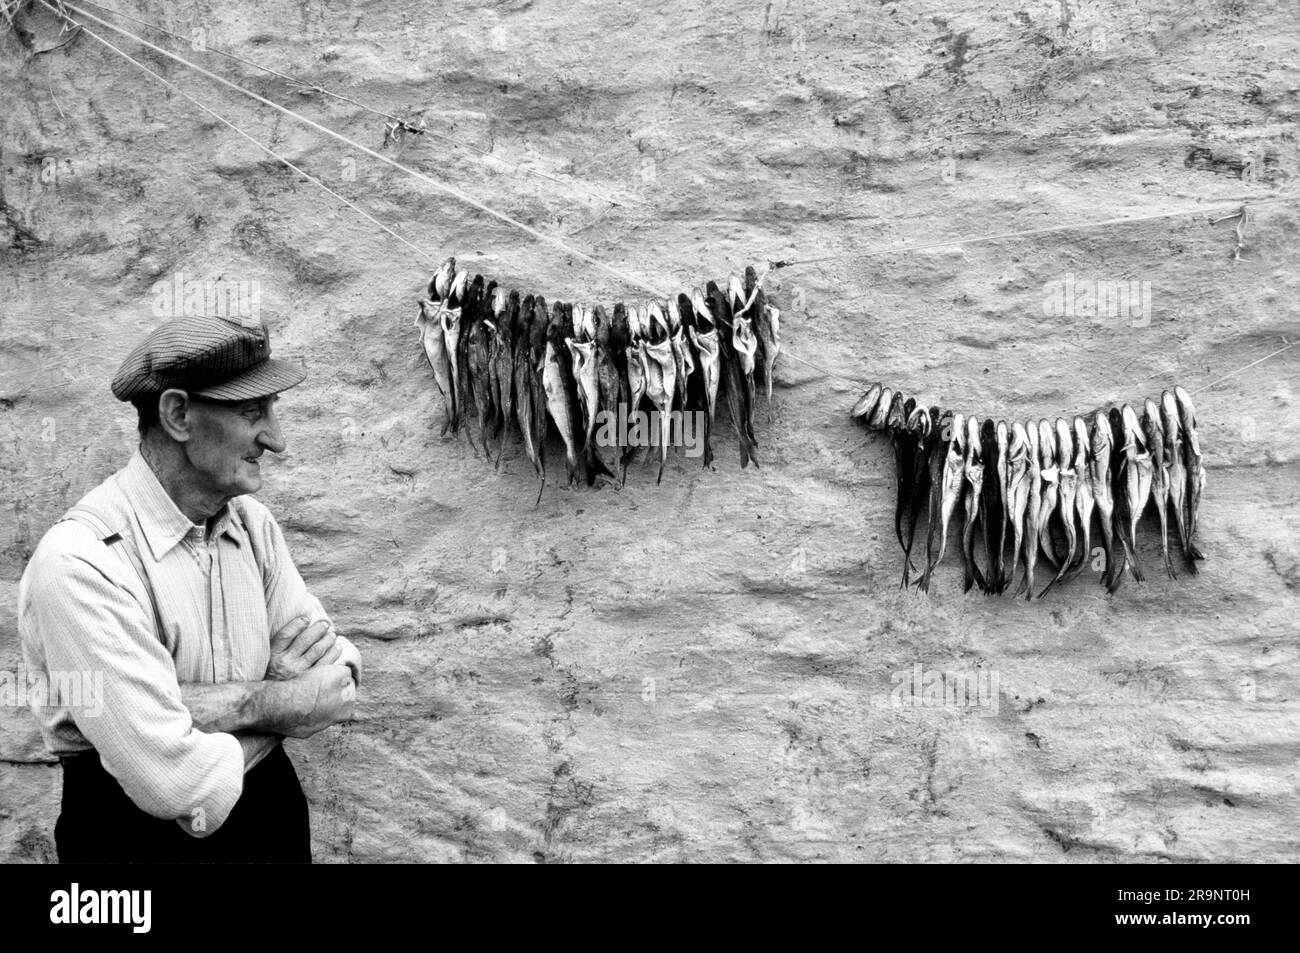 Croft, un pêcheur qui pendait sur son mur arrière de croft, il sèche. Et puis sera entreposé loin et mangé à une date ultérieure. Shetlands Mainland, îles Shetland, Écosse, vers 1979. ROYAUME-UNI 1970S HOMER SYKES Banque D'Images